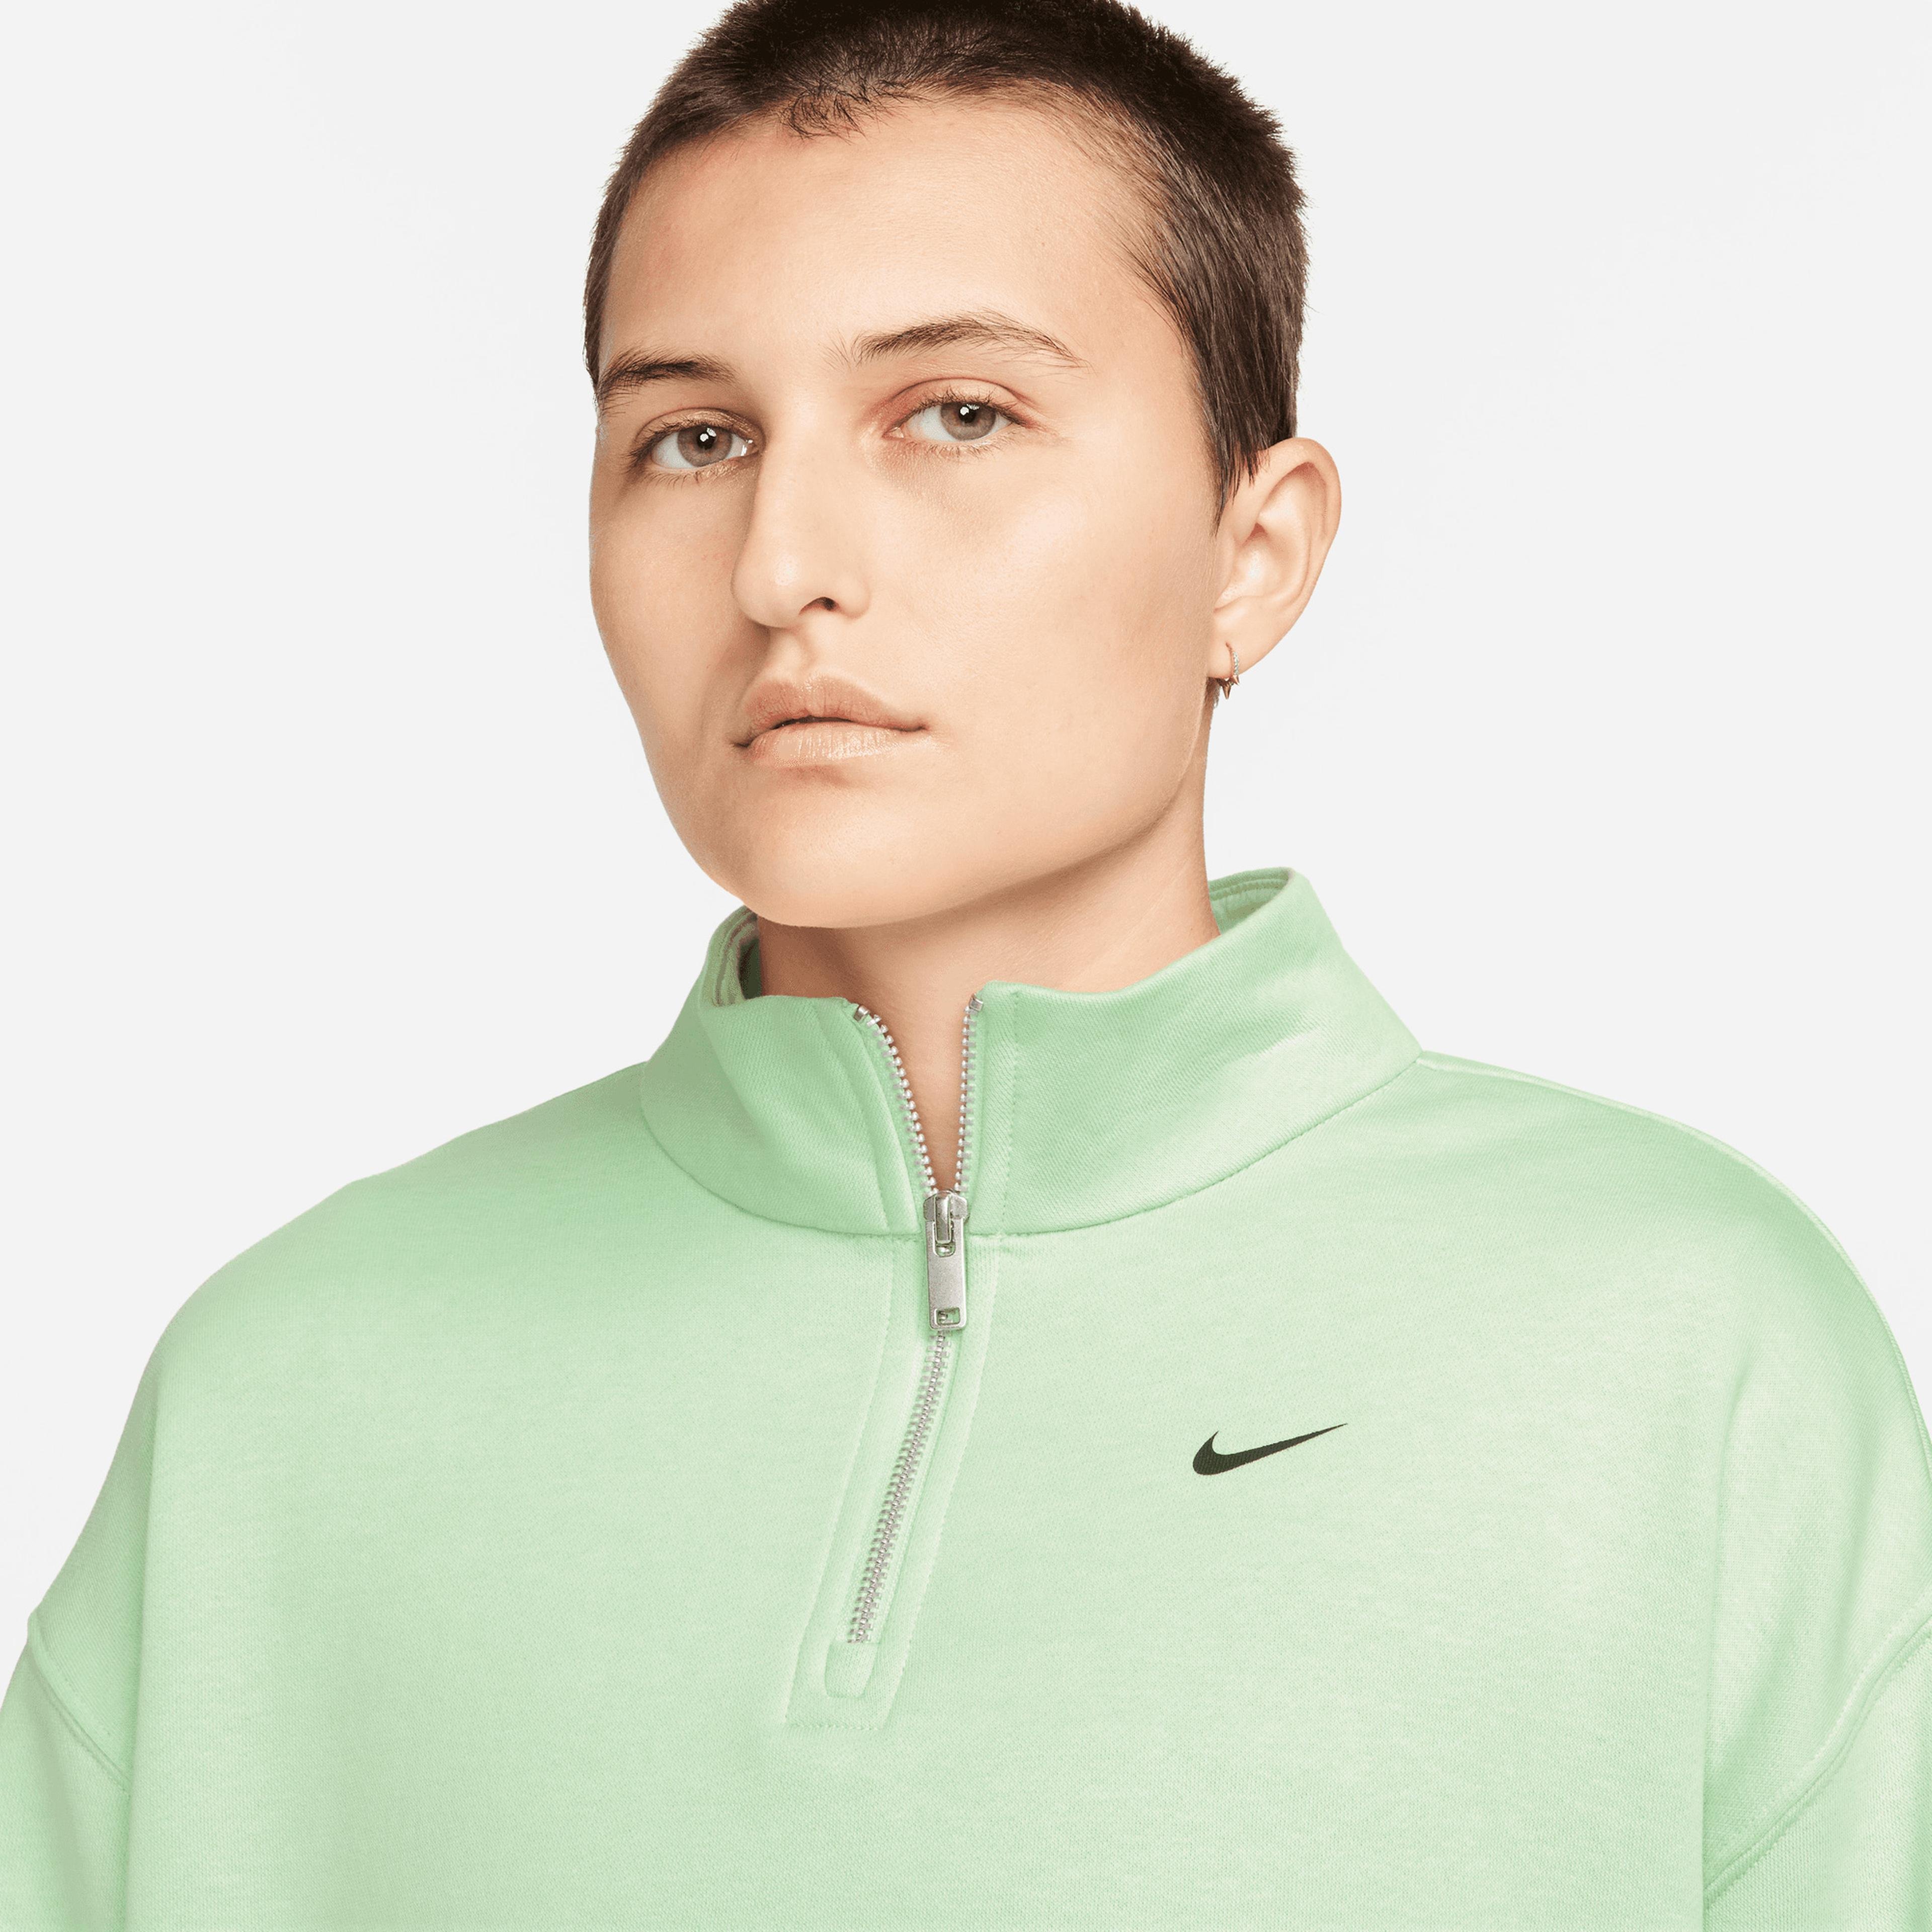 Nike Sportswear Oversized 1/4-Zip Fleece Top Kadın Yeşil Sweatshirt